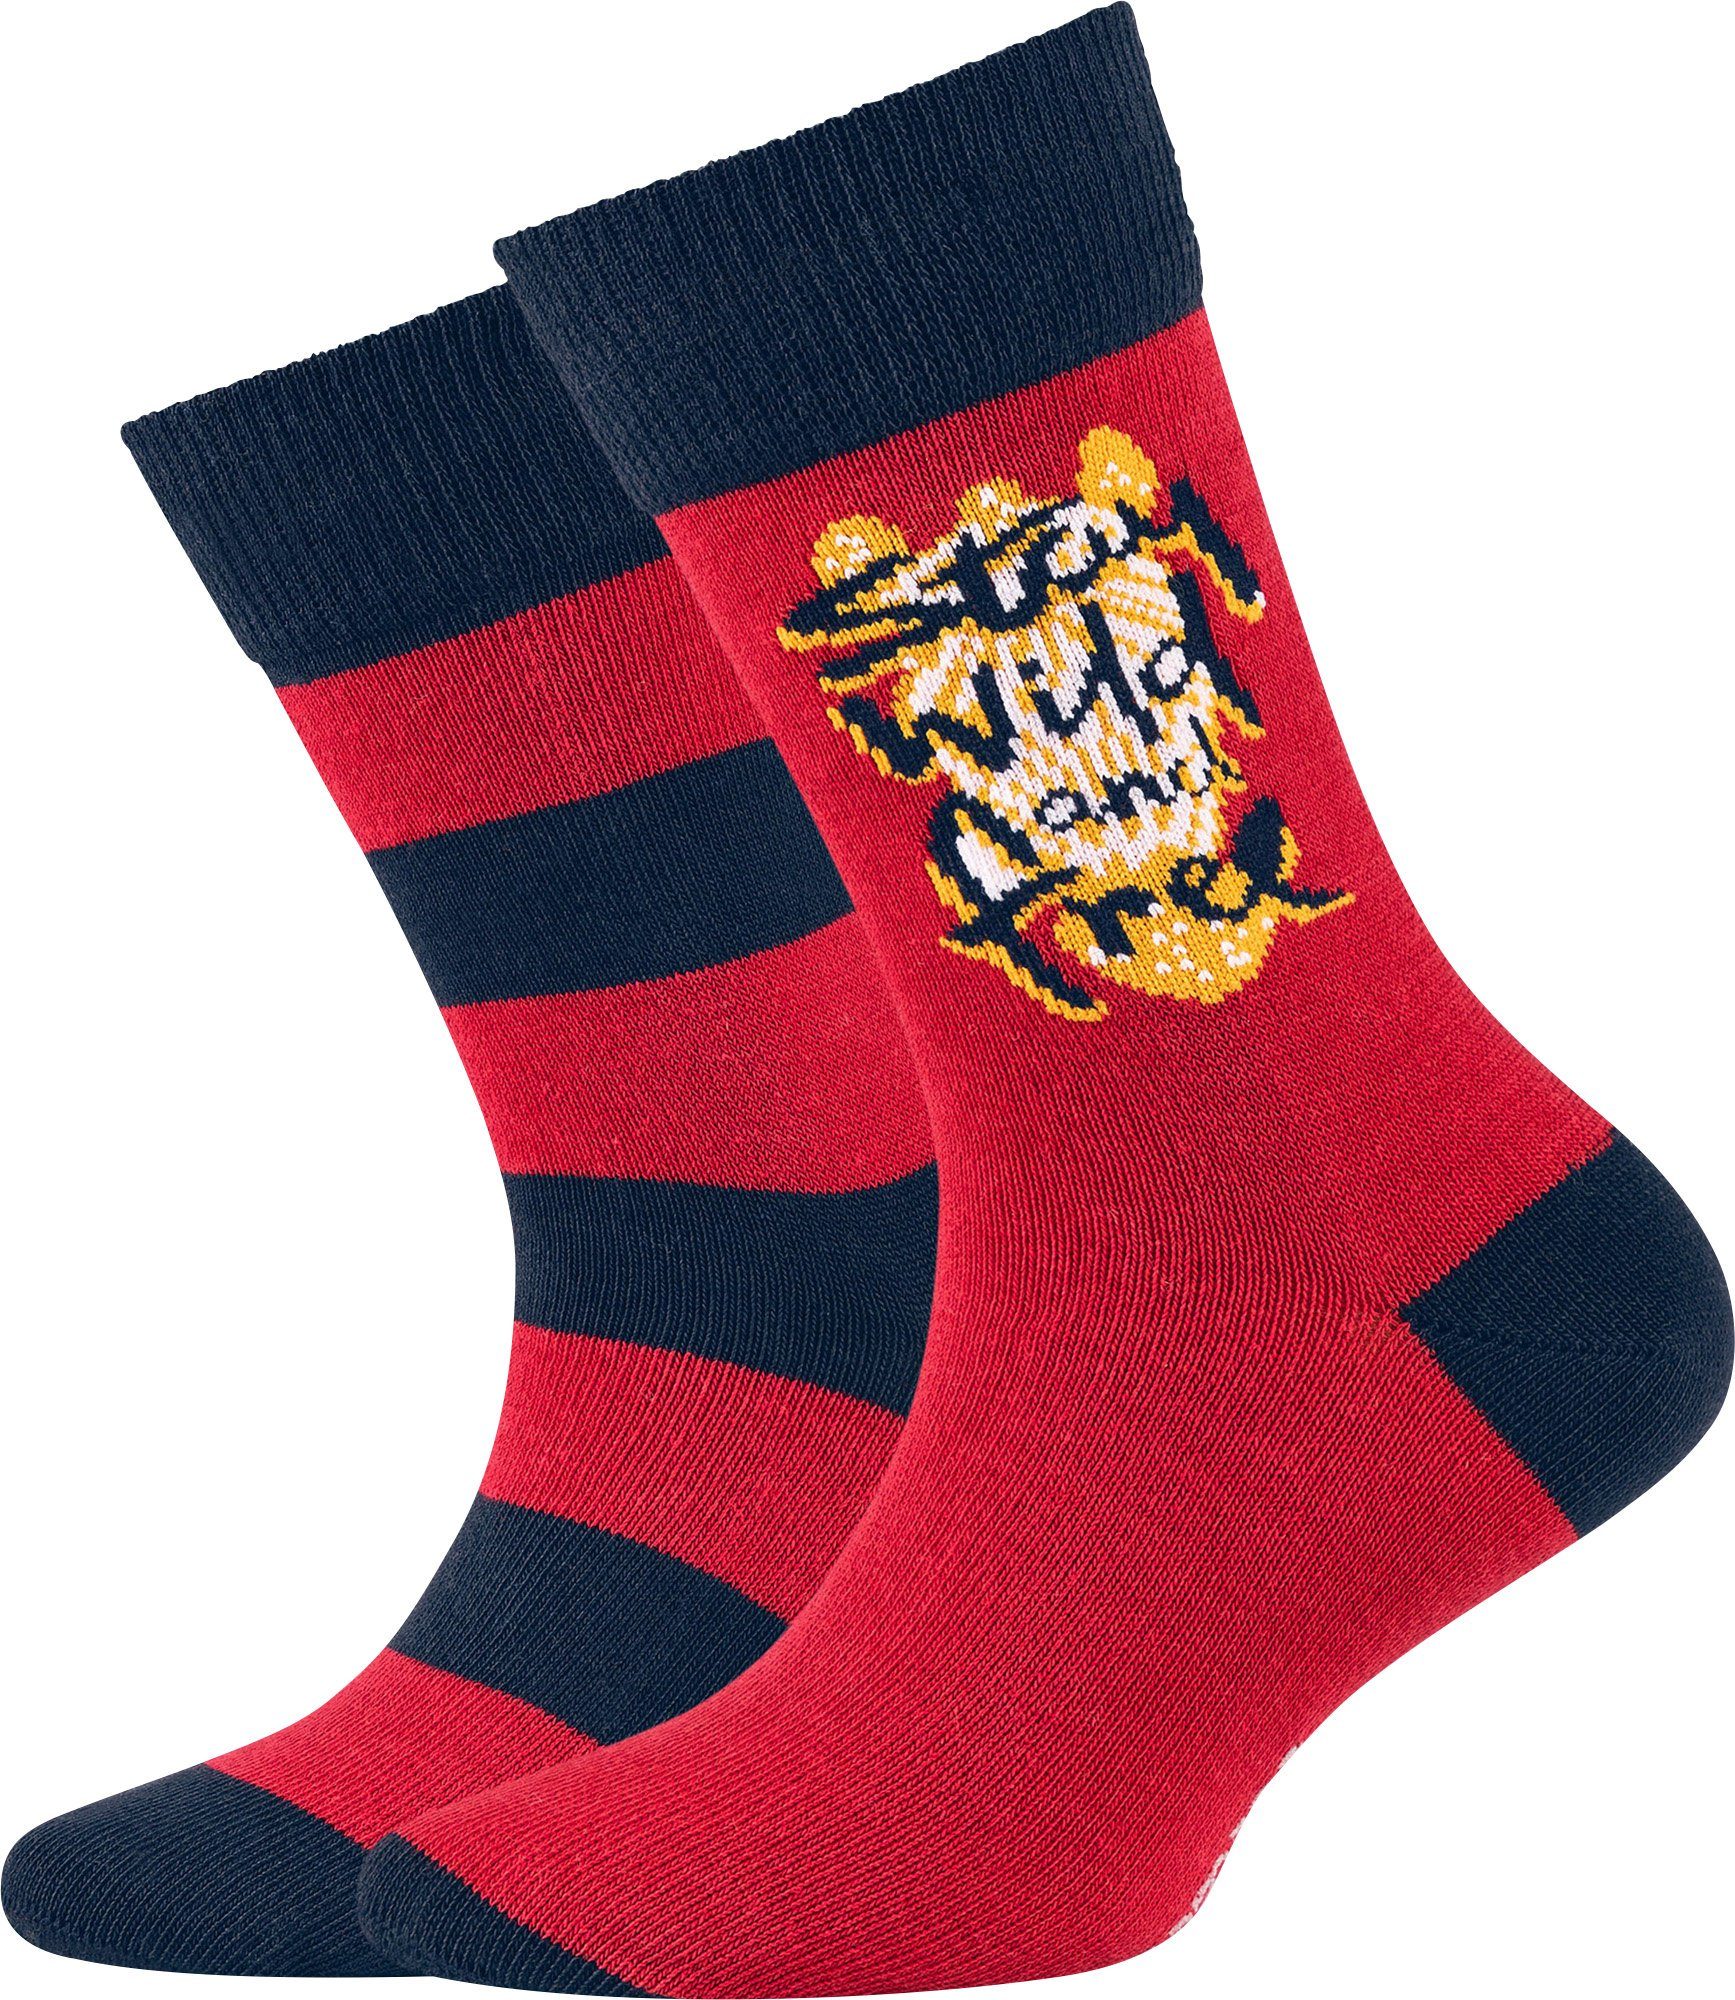 Camano Socken Kinder-Socken Streifen: Paar Paar 2 1